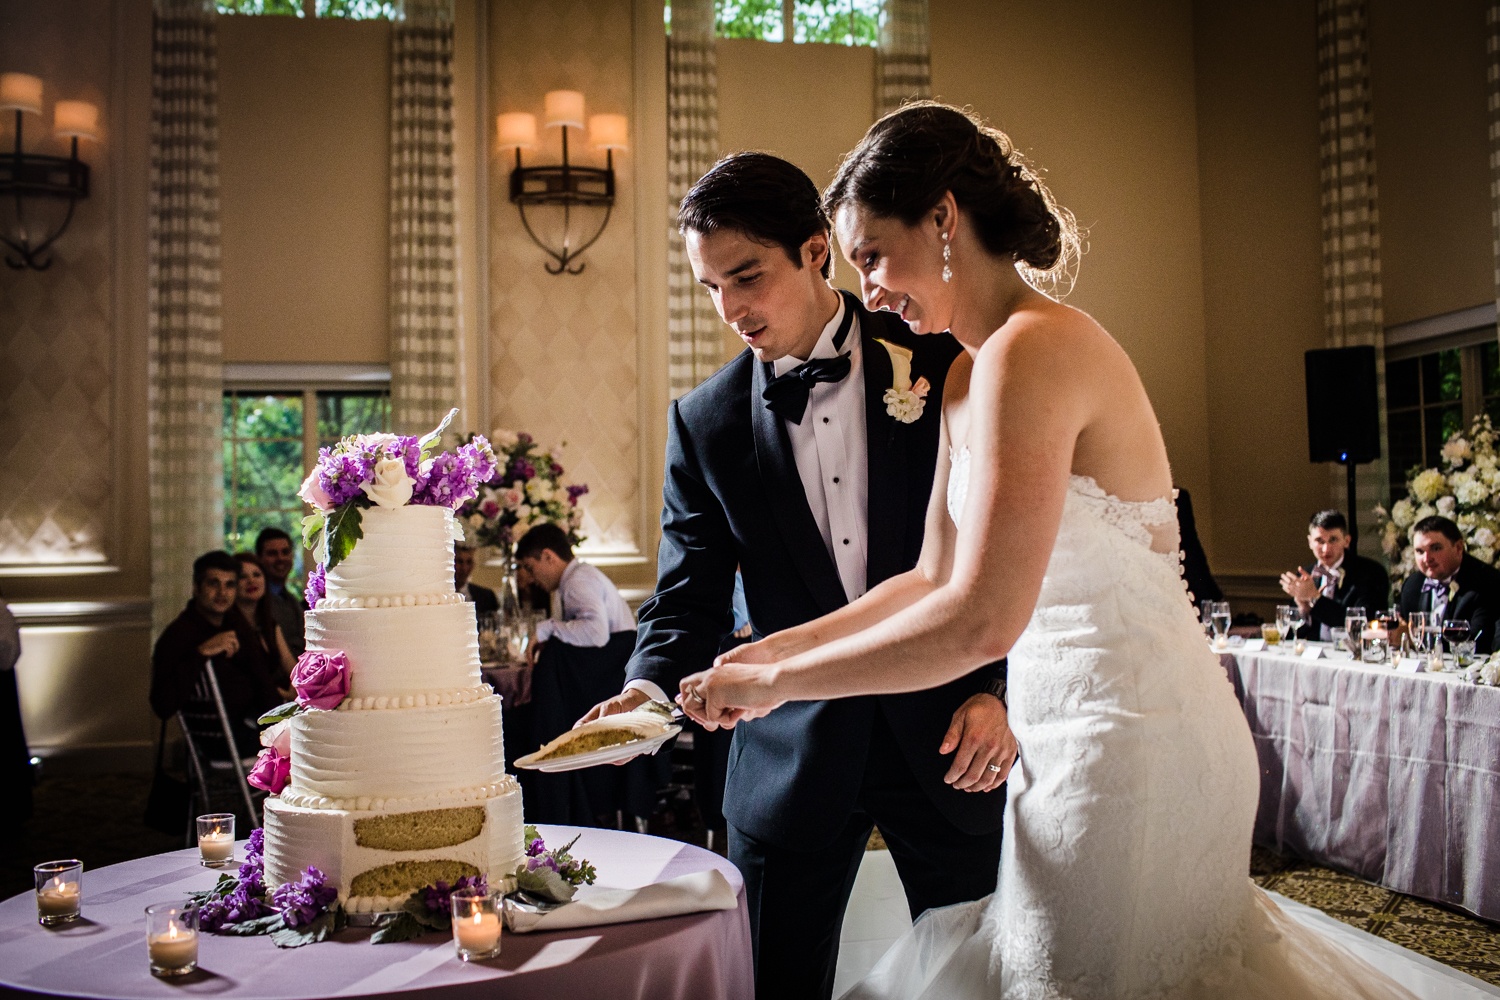 A couple cuts their wedding cake during a Glen Club wedding reception. 